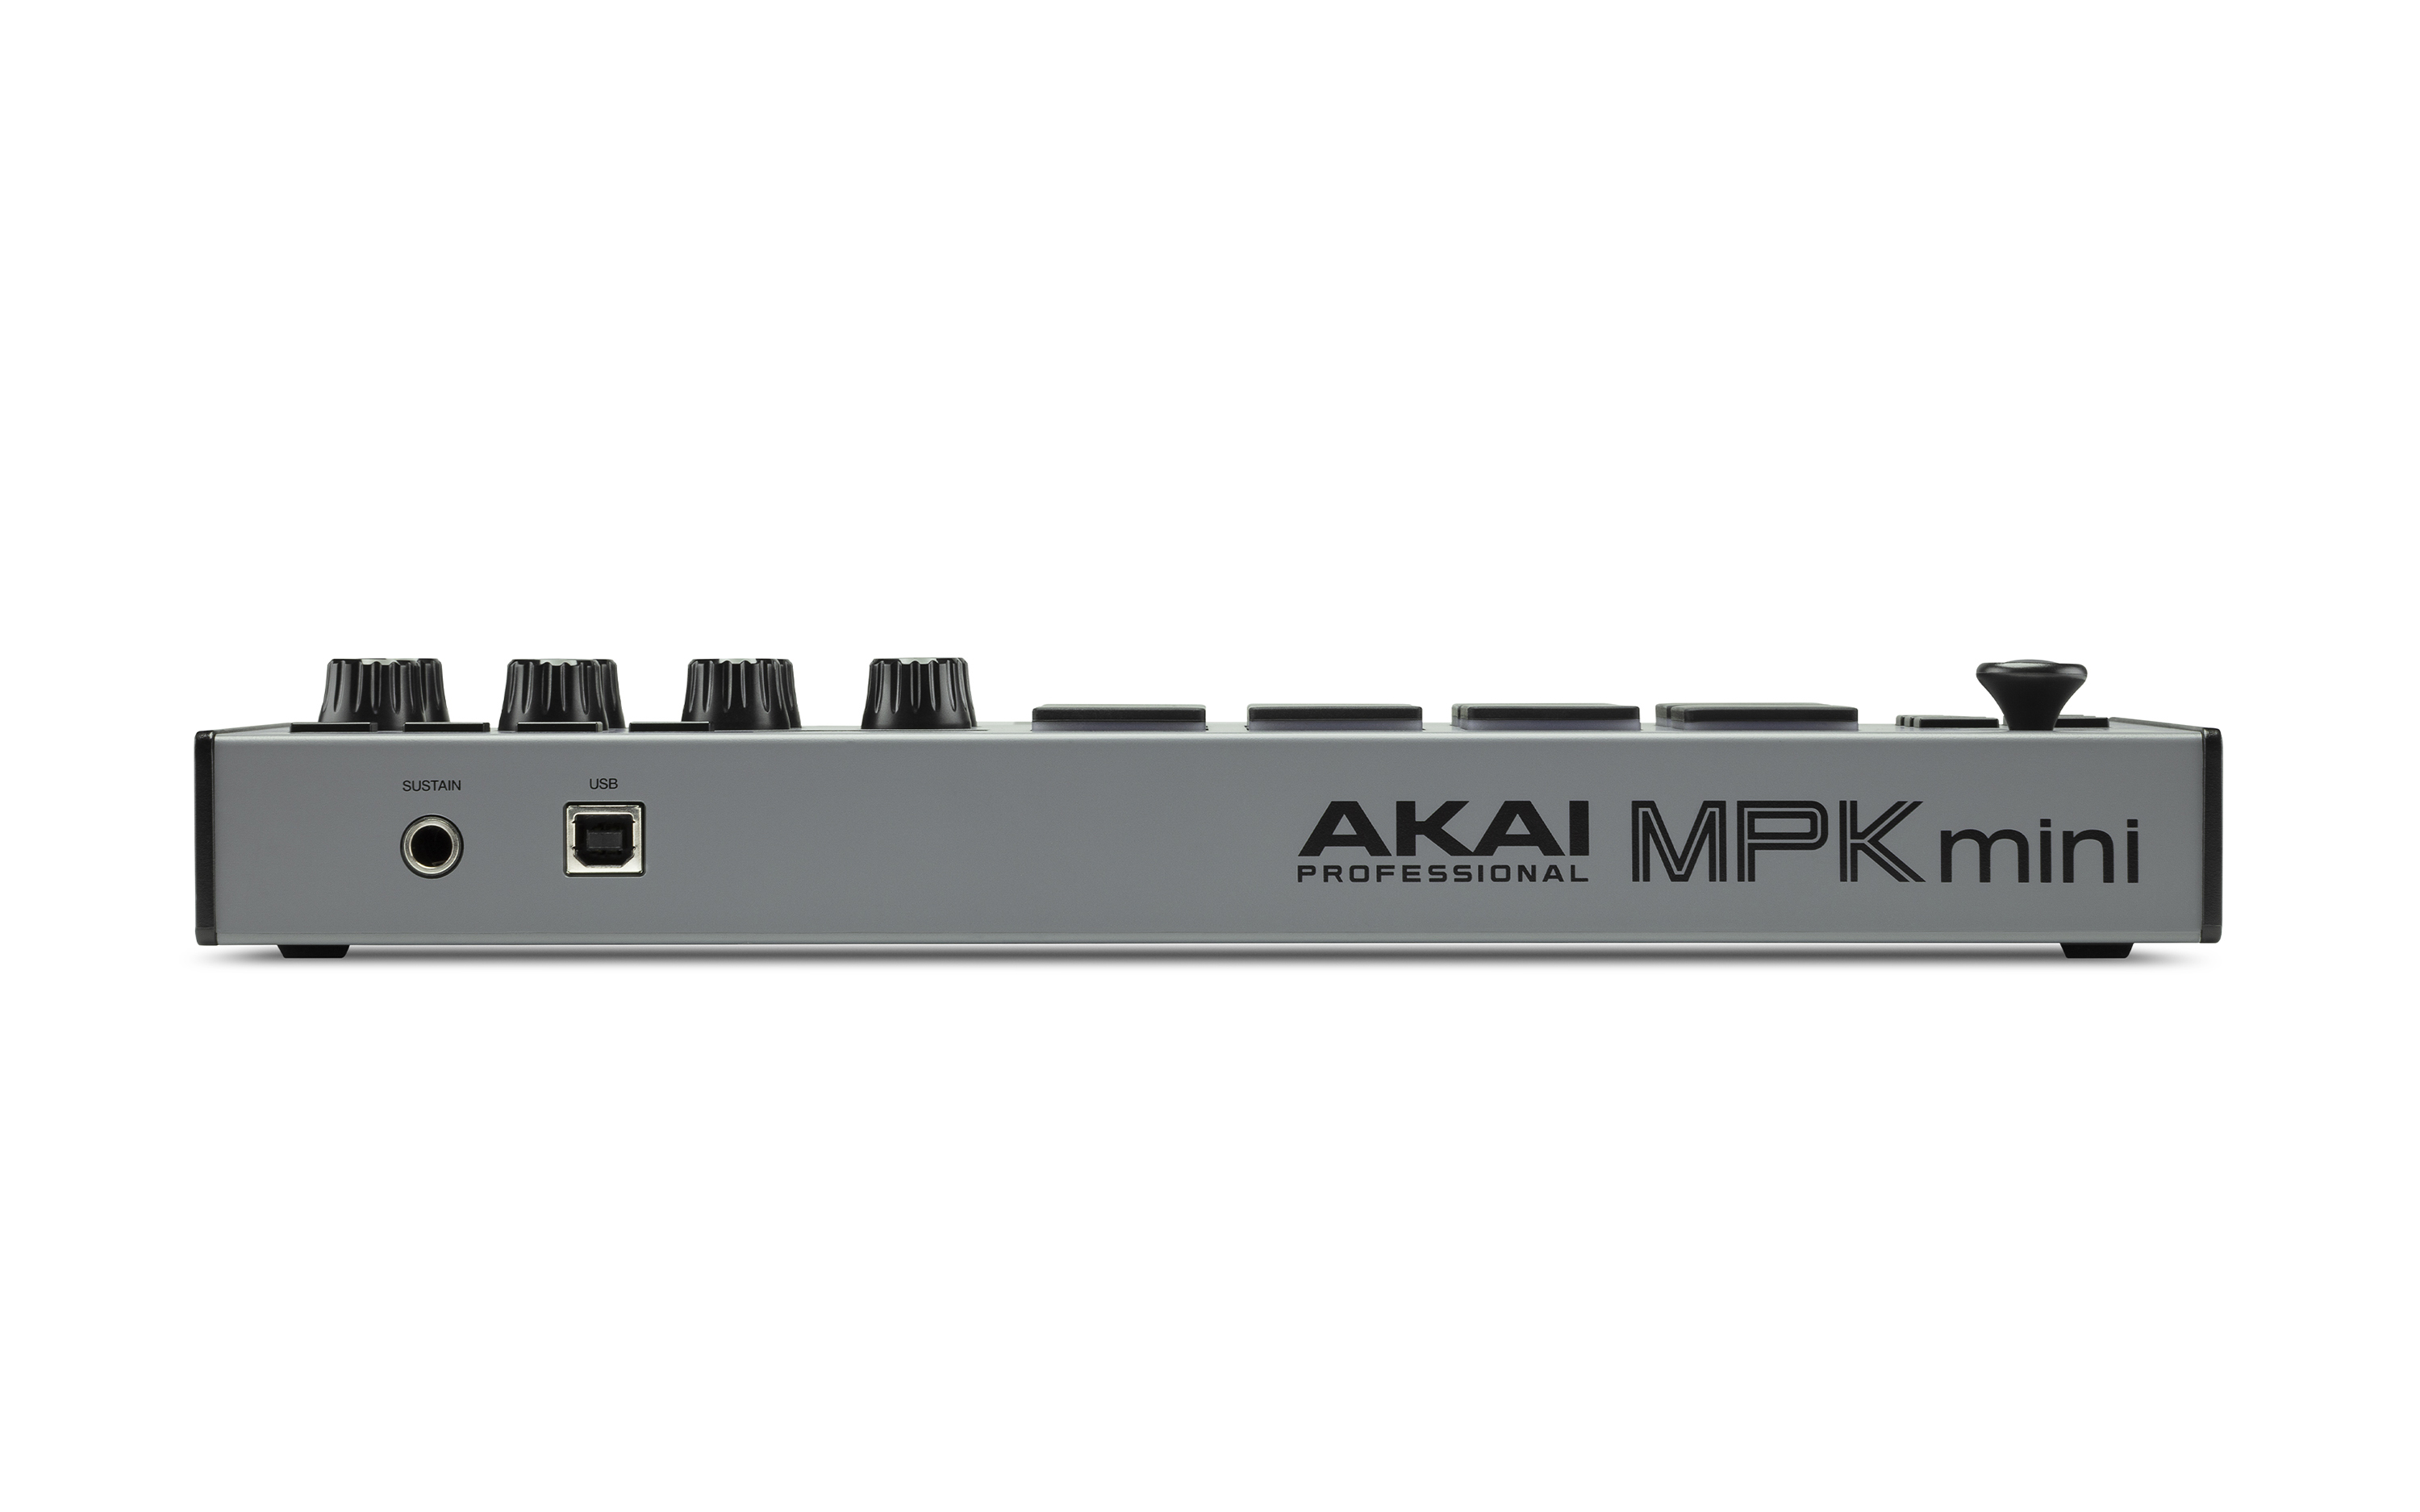 MPK mini MK3 gray